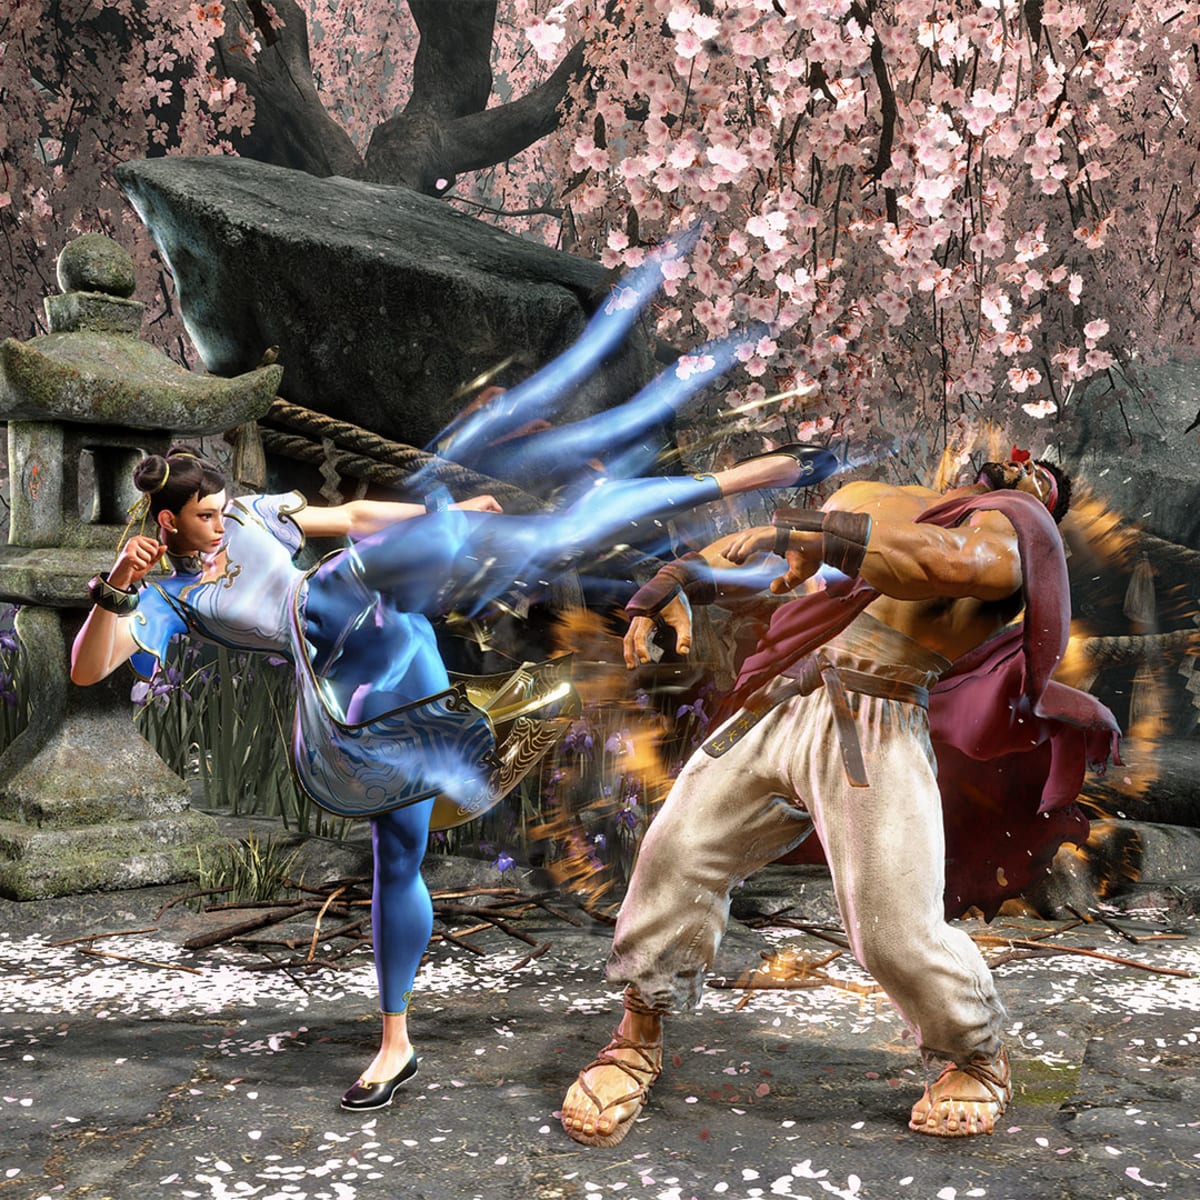 Street Fighter Alpha 2 - Chun-Li Move List 